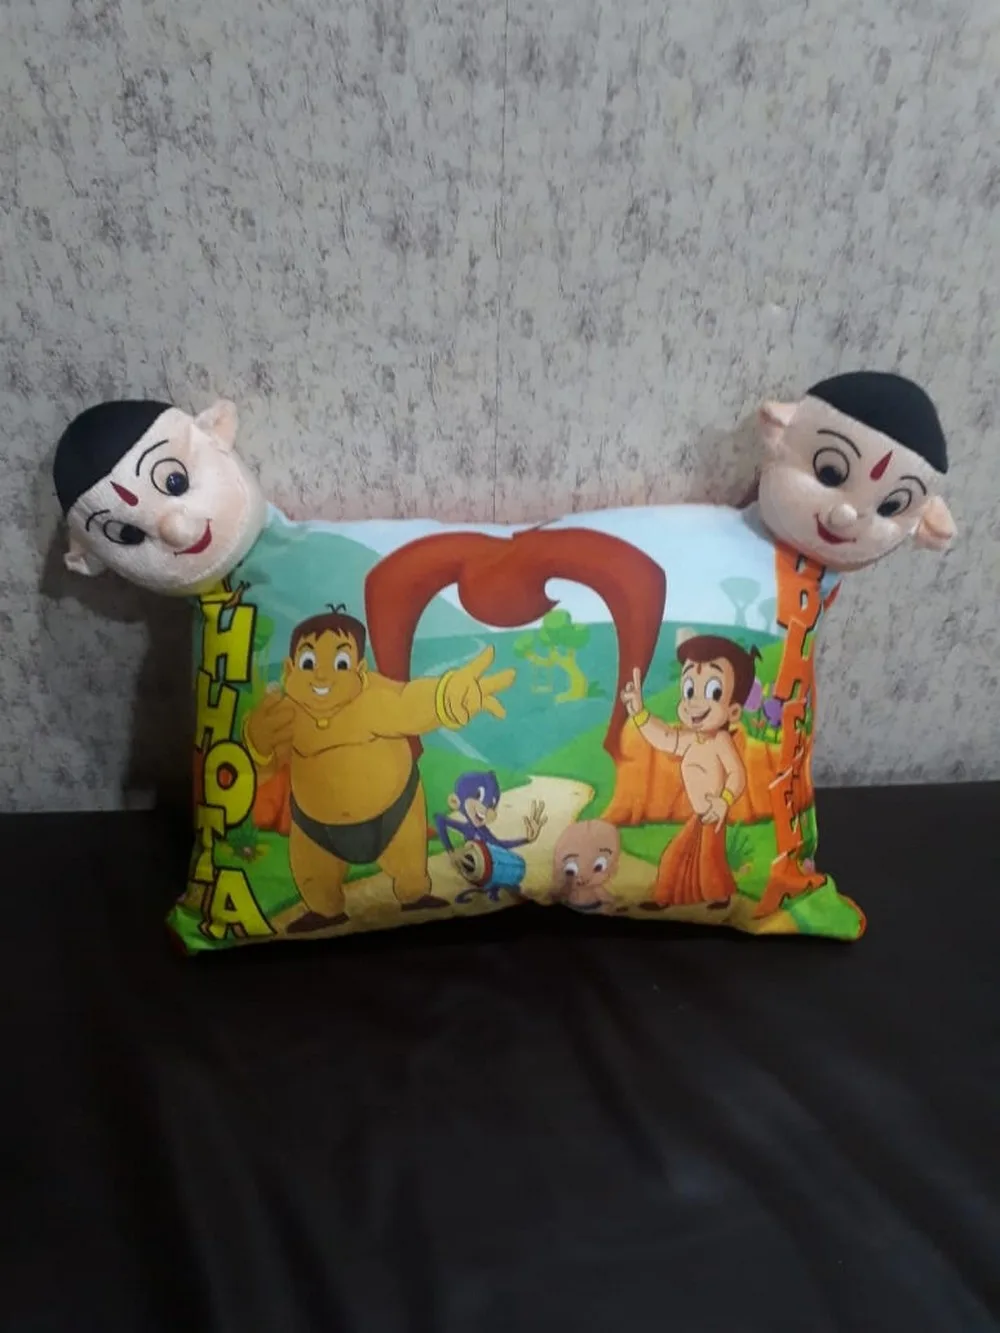 Kids Cartoon Face Pillow Chhota Bheem friends, 11x17, 1 Piece, Colorful